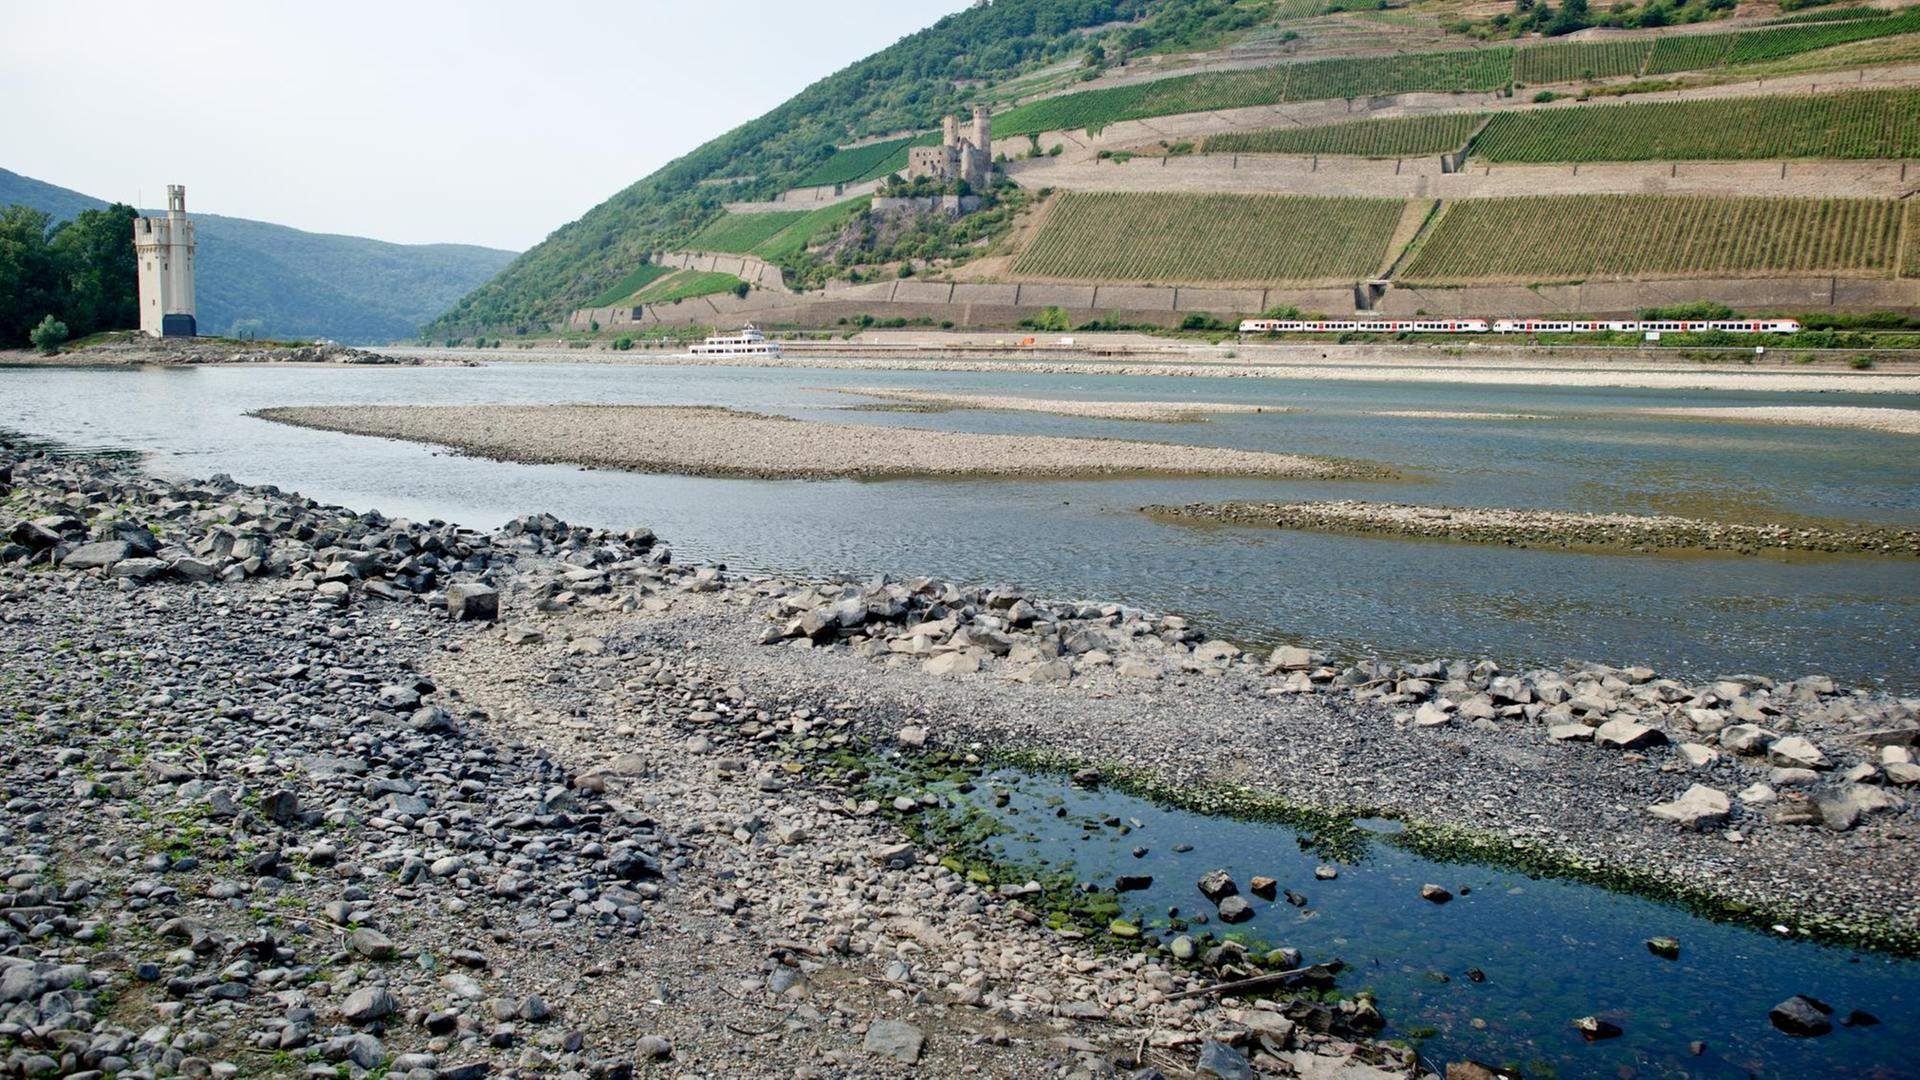 Blick auf Kiesbetten im Rhein mit Niedrigwasser, im Hintergrund Weinberge und der Binger Mäuseturm.